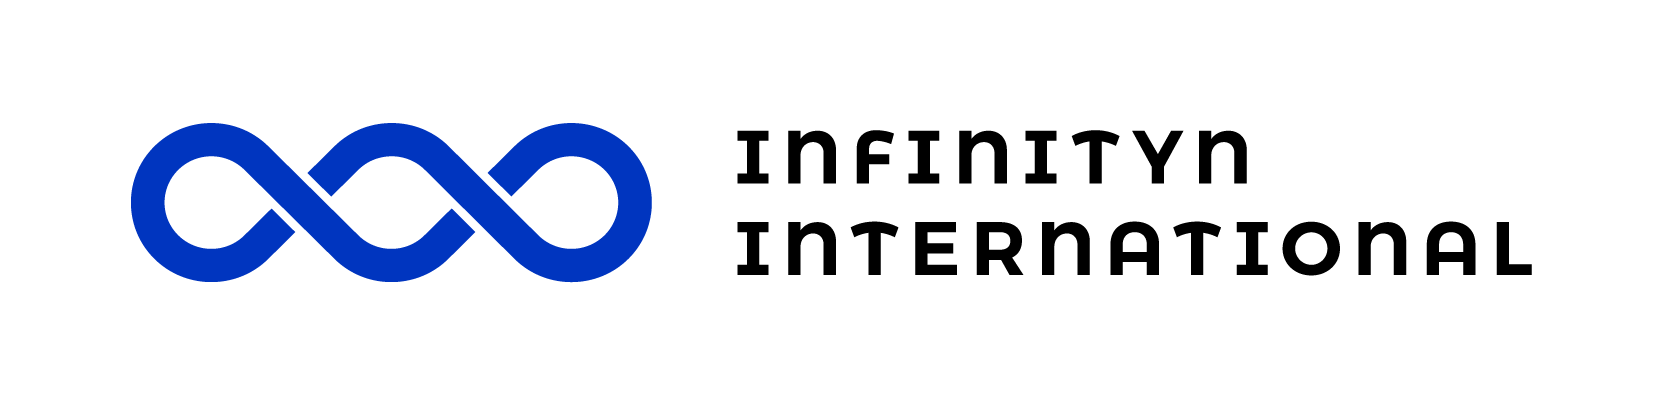 Infinityn_Logo_RGB_International_Basic (1)